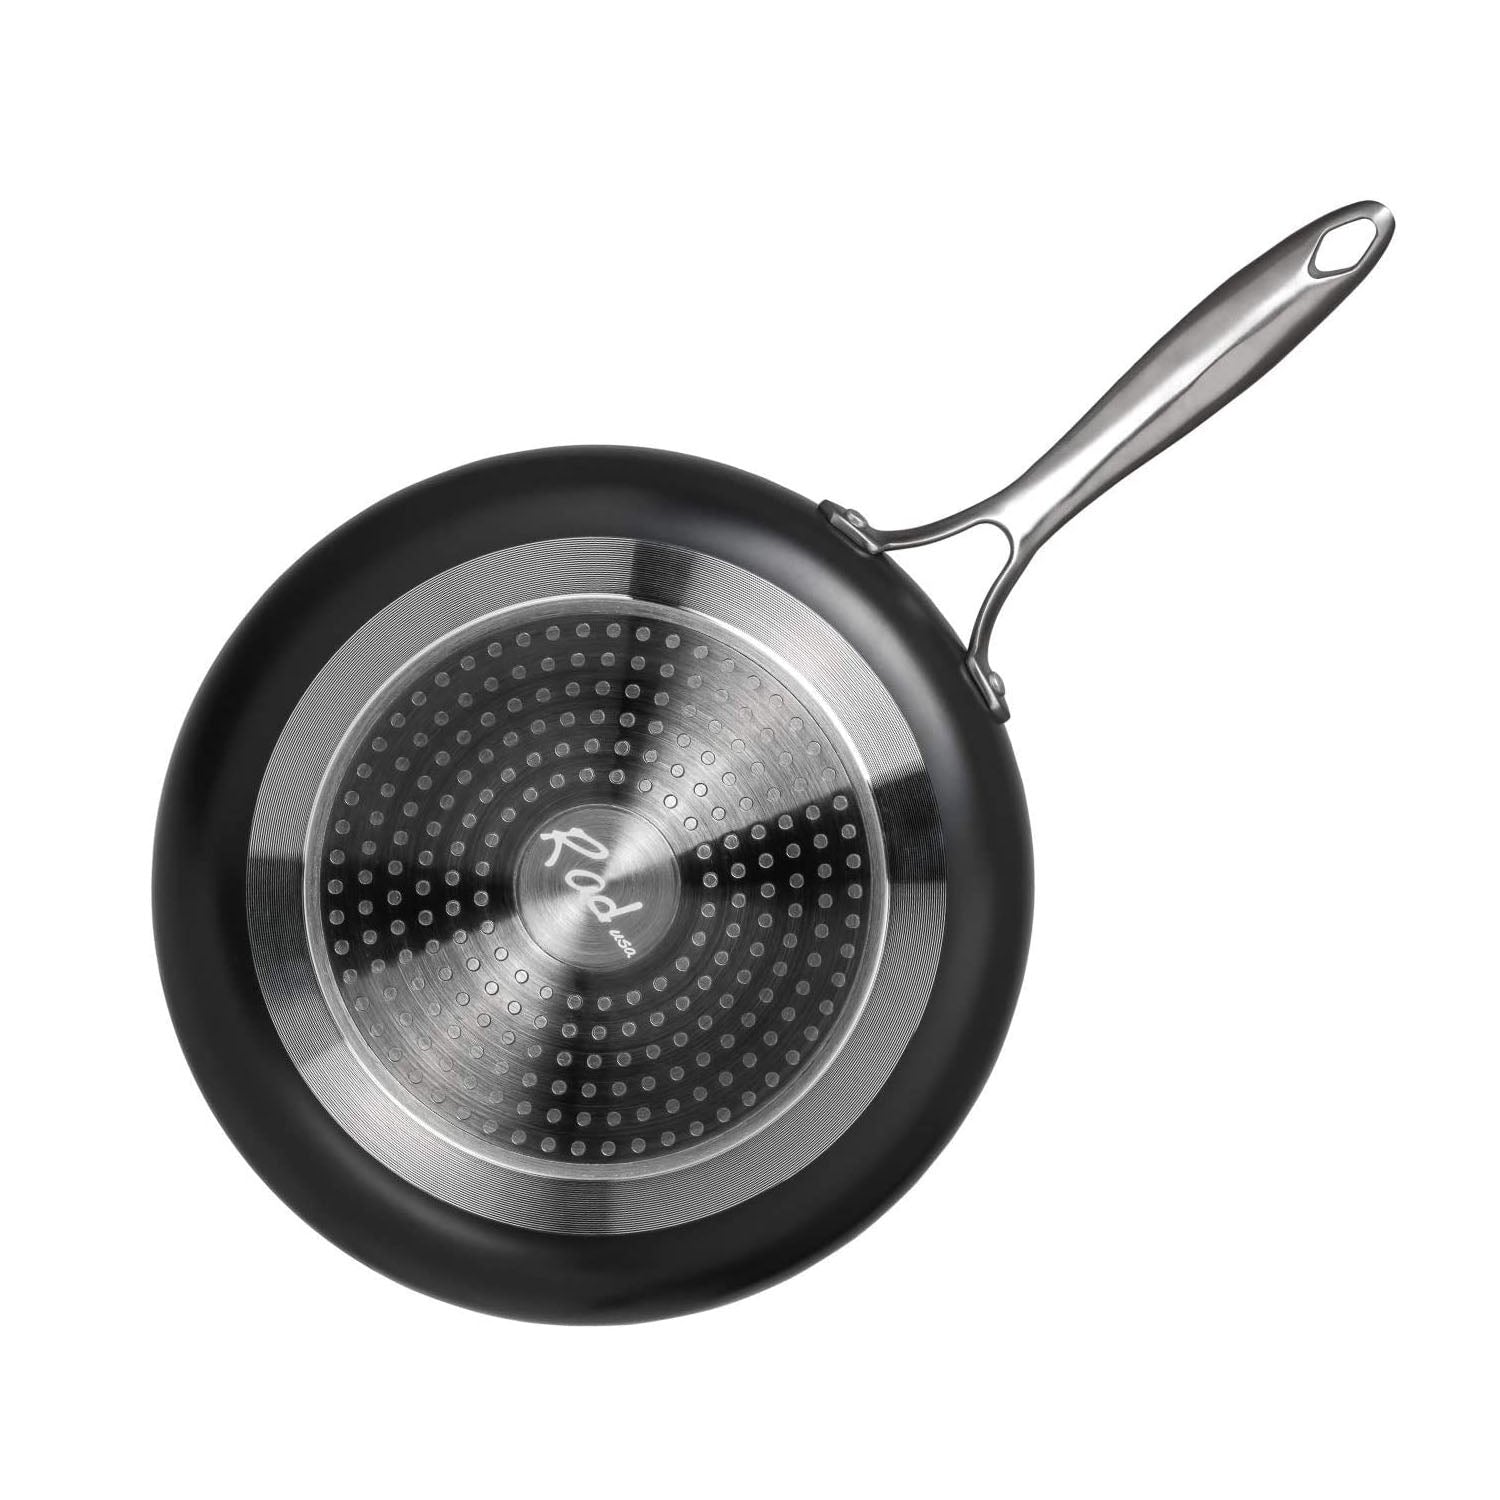 Radical Pan 8-Inch Nonstick Frying & Saute Pan, Skillet